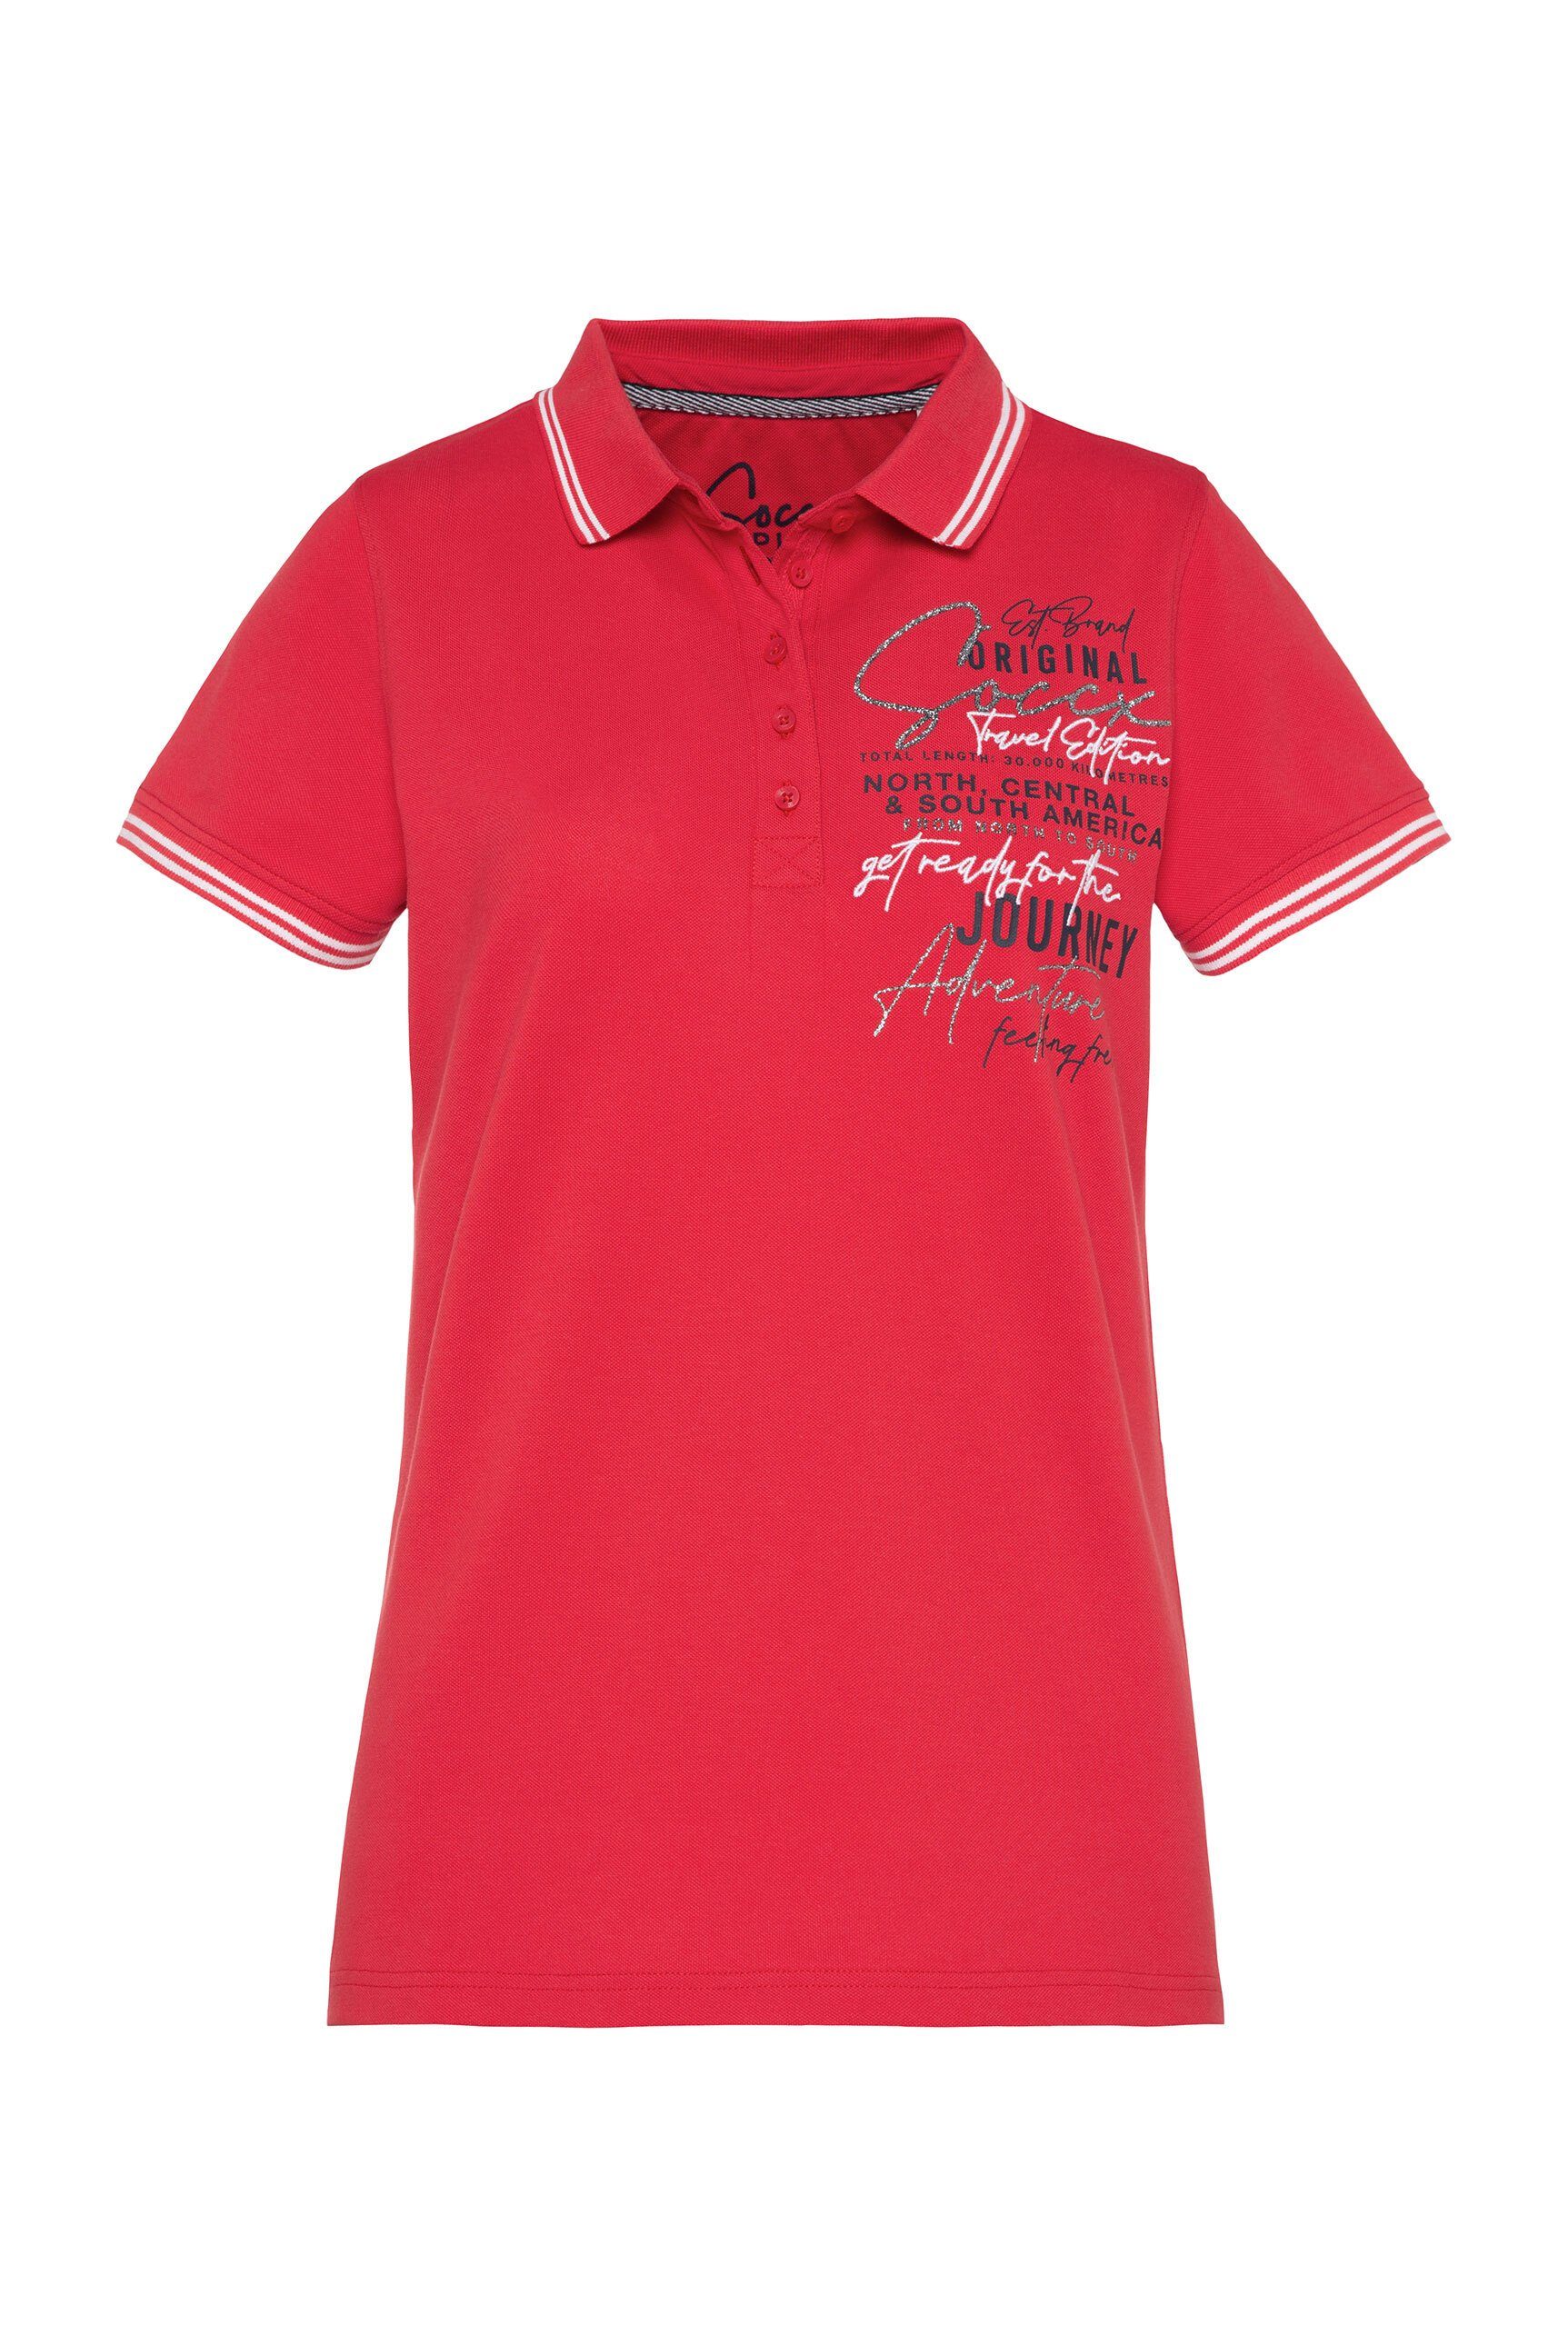 SOCCX Poloshirt mit Elasthan-Anteil, Trikotkragen und Ärmelbündchen mit  Streifen-Dessin | Poloshirts